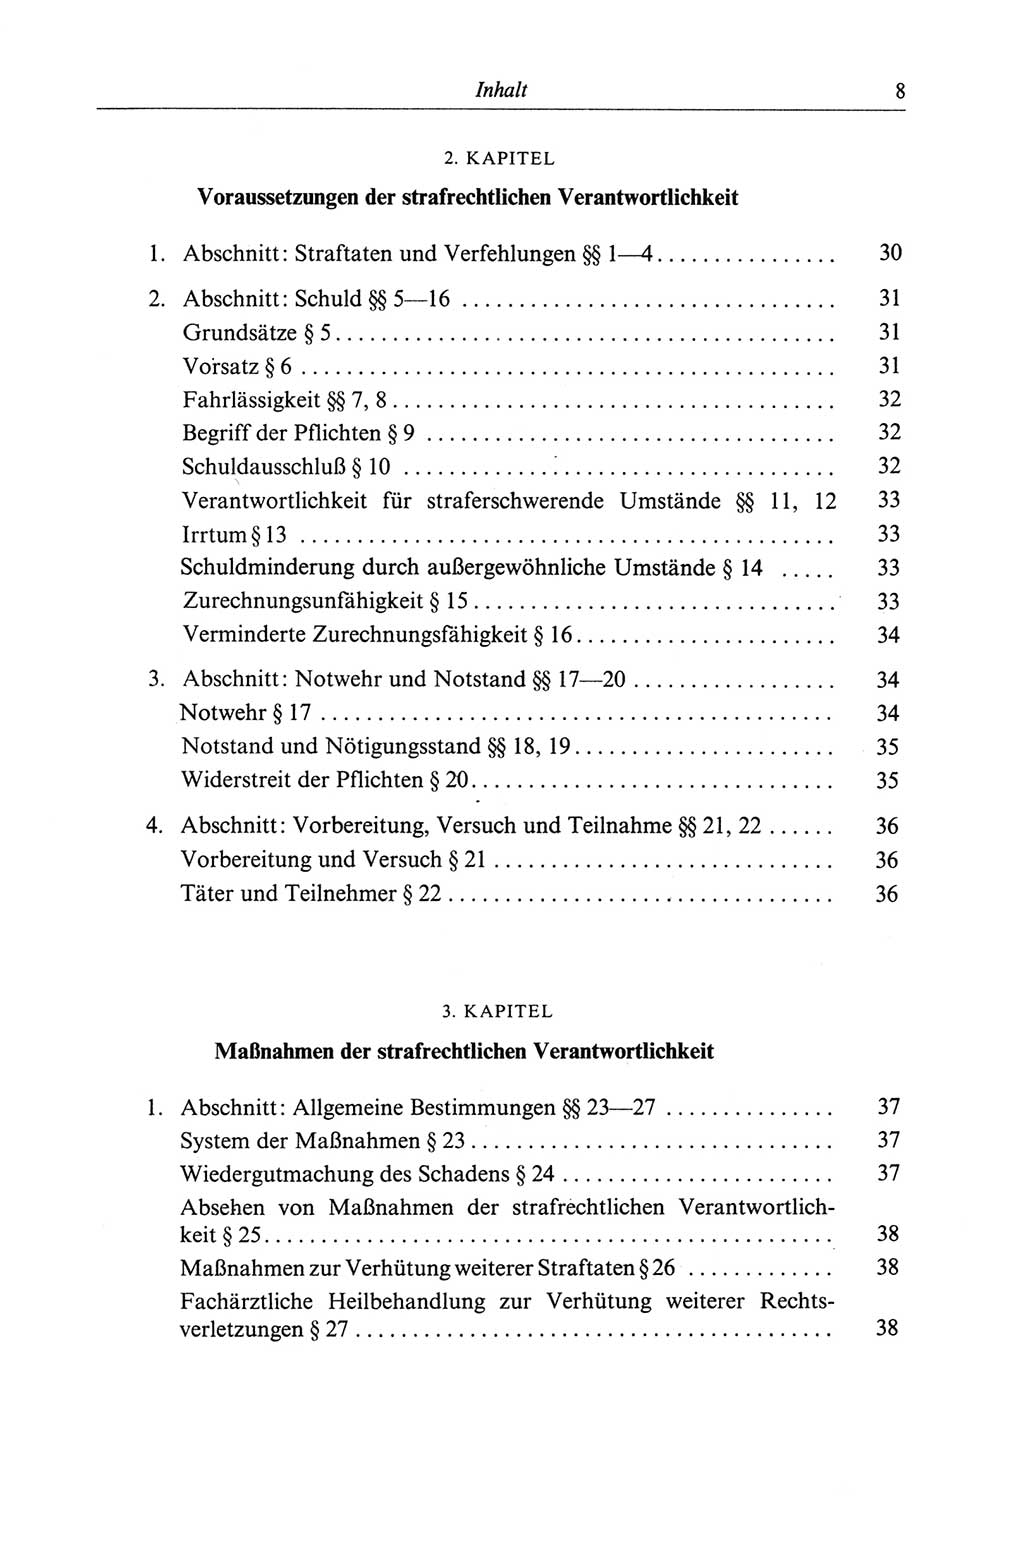 Strafgesetzbuch (StGB) der Deutschen Demokratischen Republik (DDR) und angrenzende Gesetze und Bestimmungen 1968, Seite 8 (StGB Ges. Best. DDR 1968, S. 8)